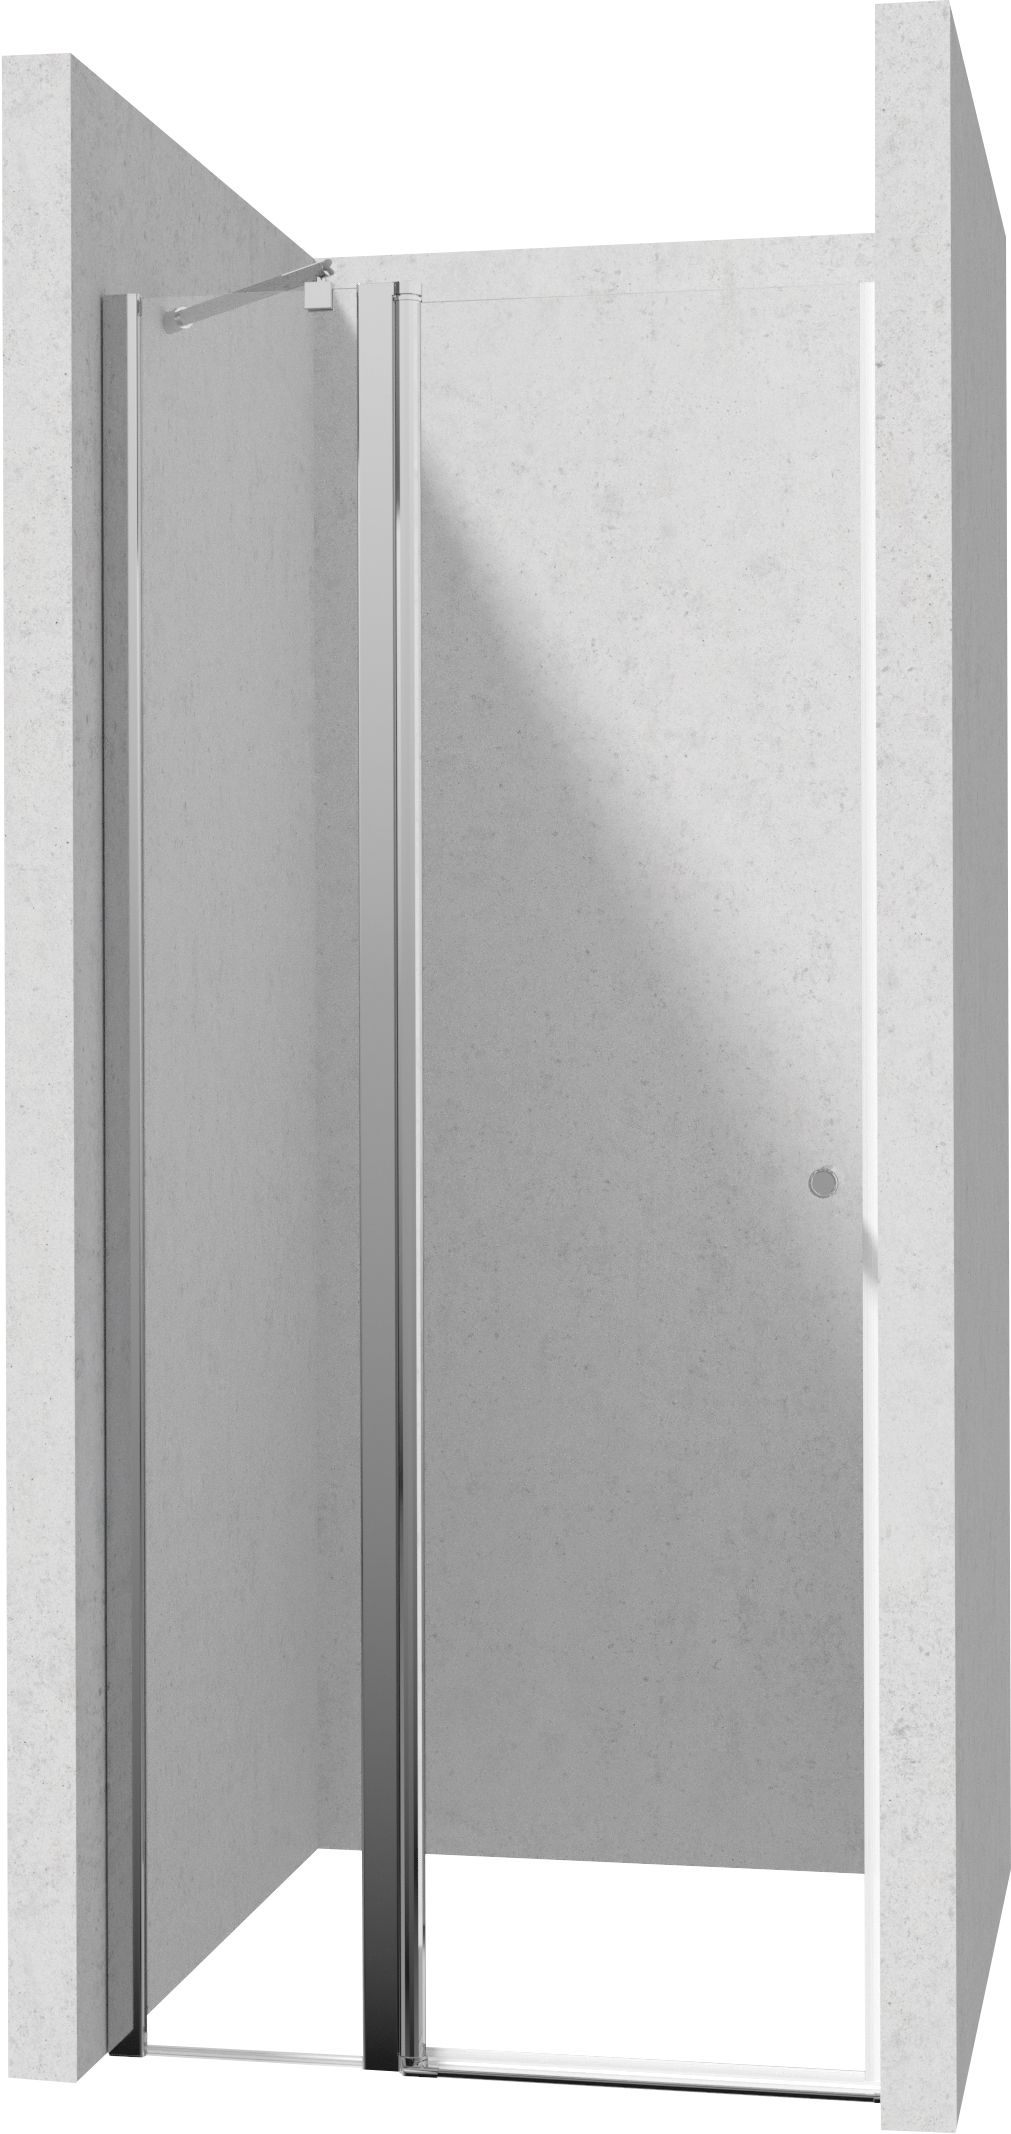 Drzwi prysznicowe 80 cm - uchylne - KTSU042P - Główne zdjęcie produktowe